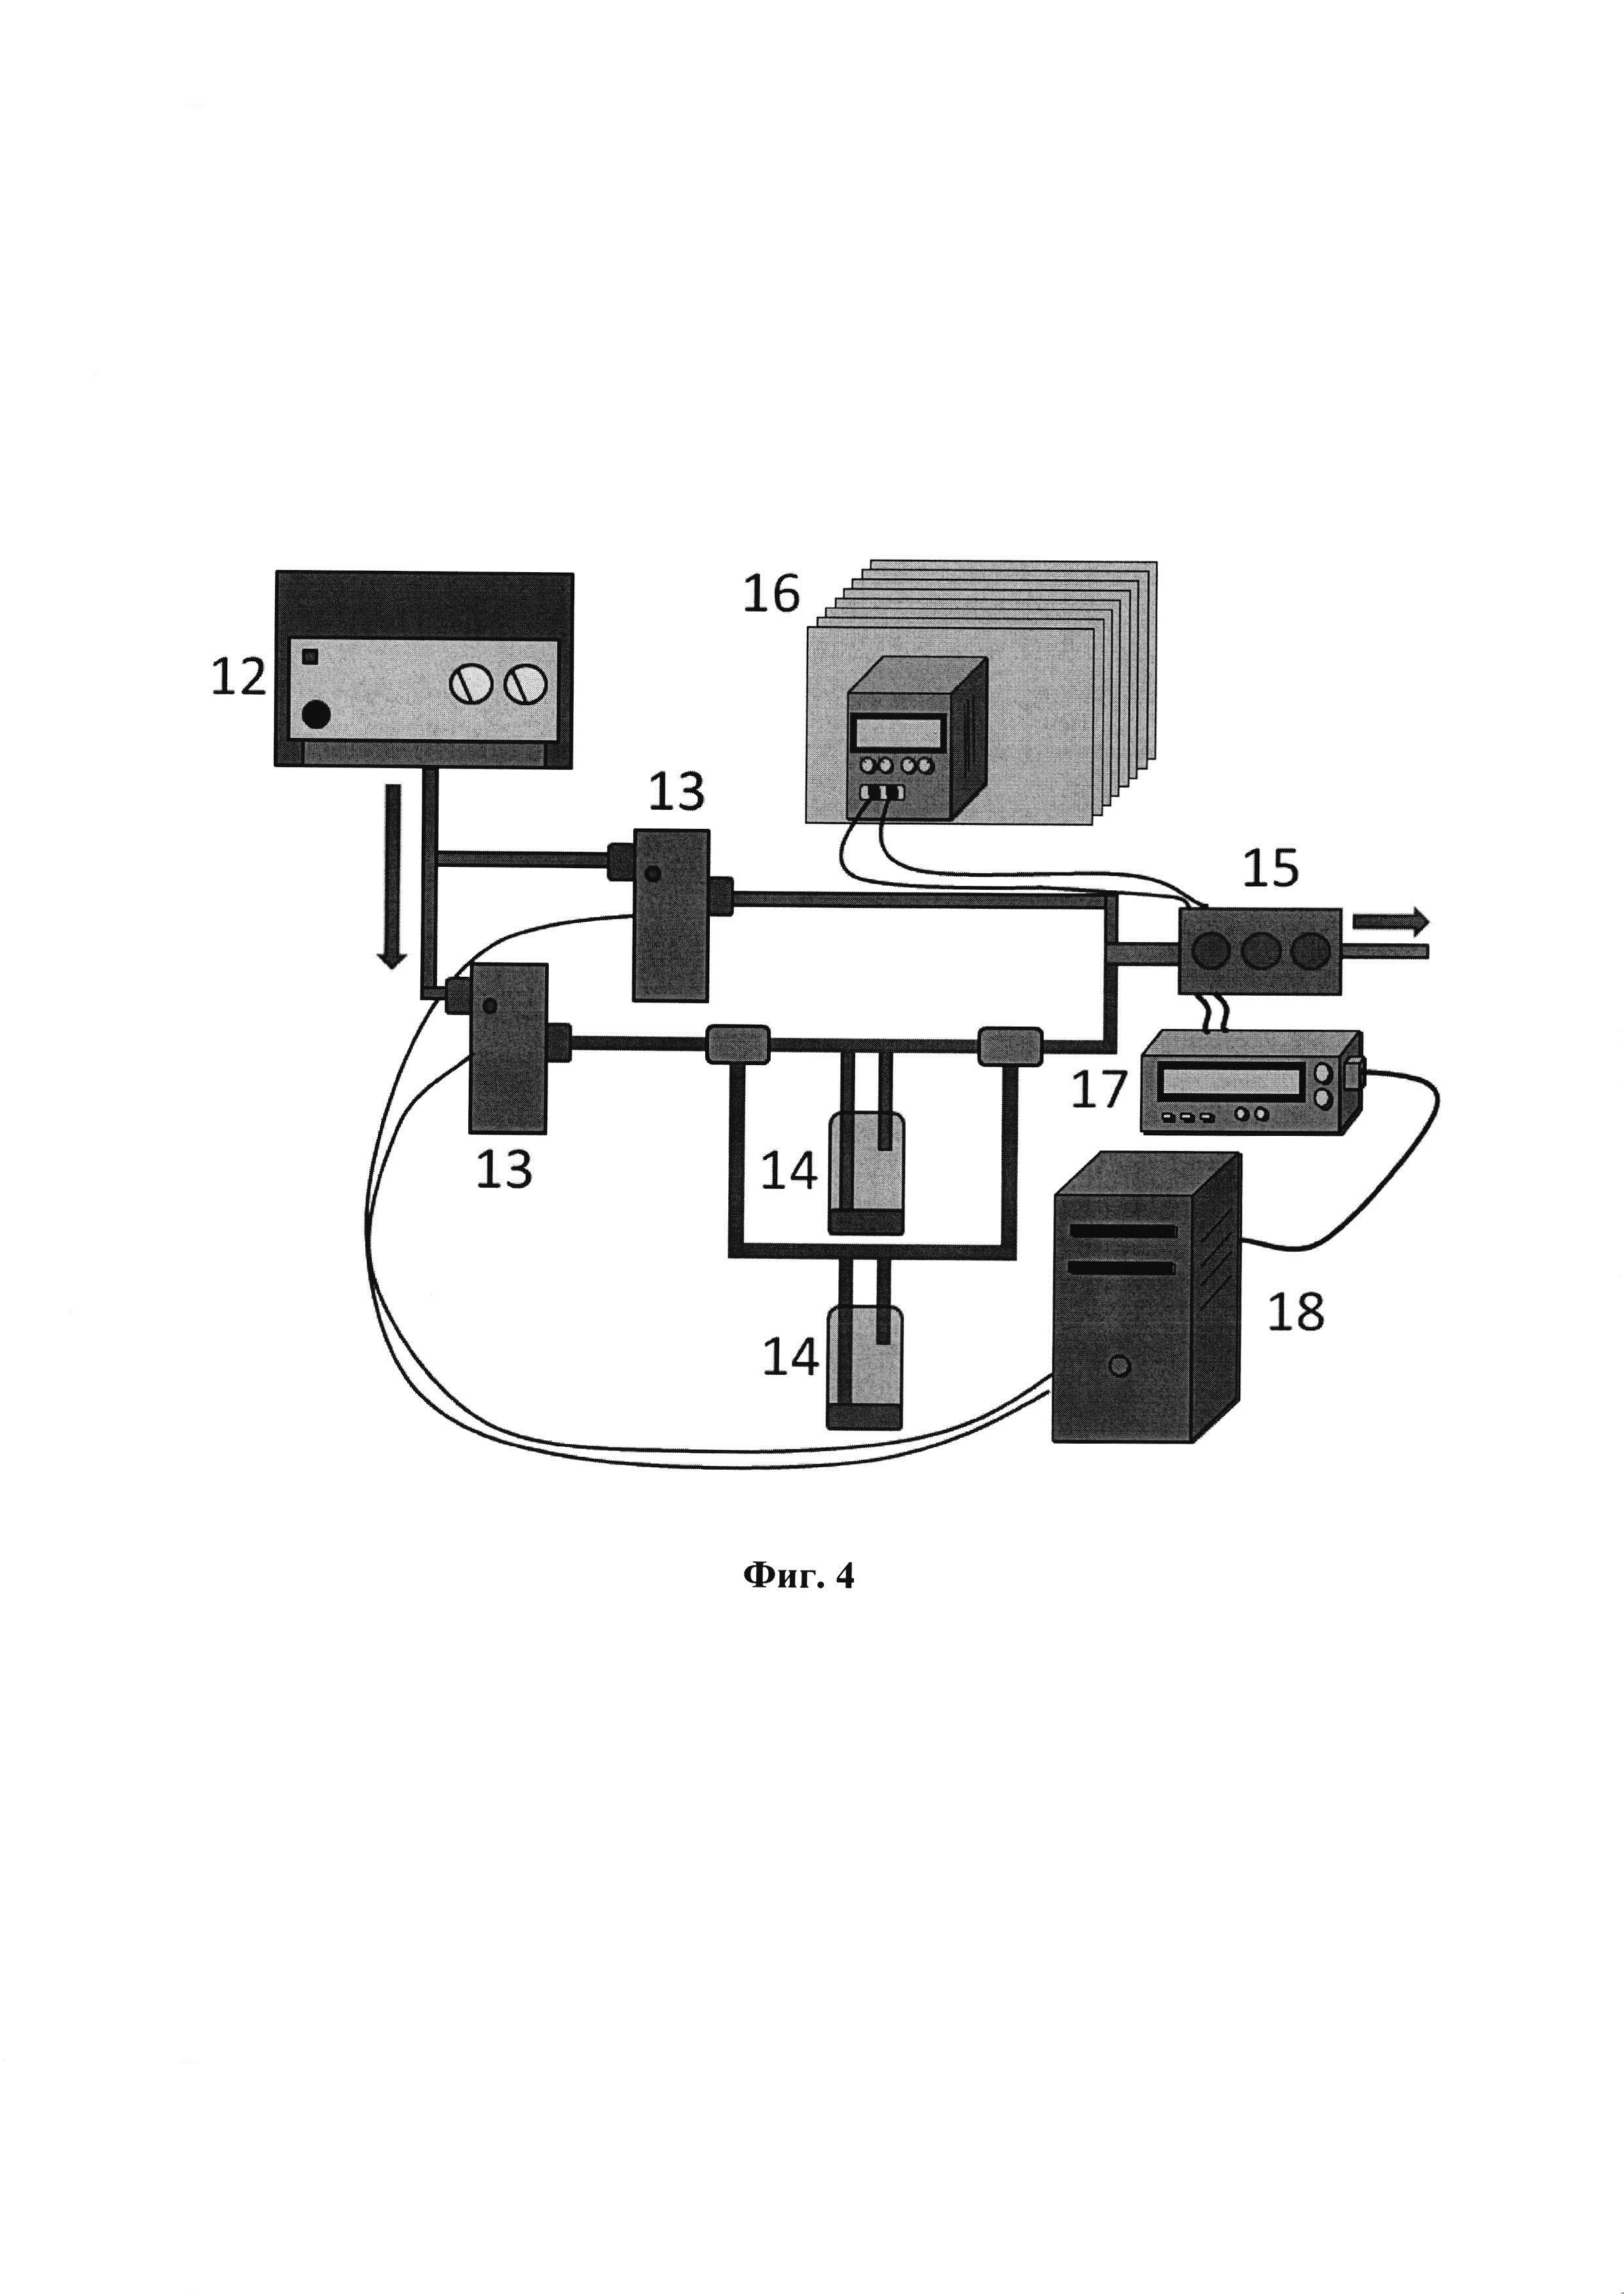 Одноэлектродный газовый сенсор на основе окисленного титана, способ его изготовления, сенсорное устройство и мультисенсорная линейка на его основе